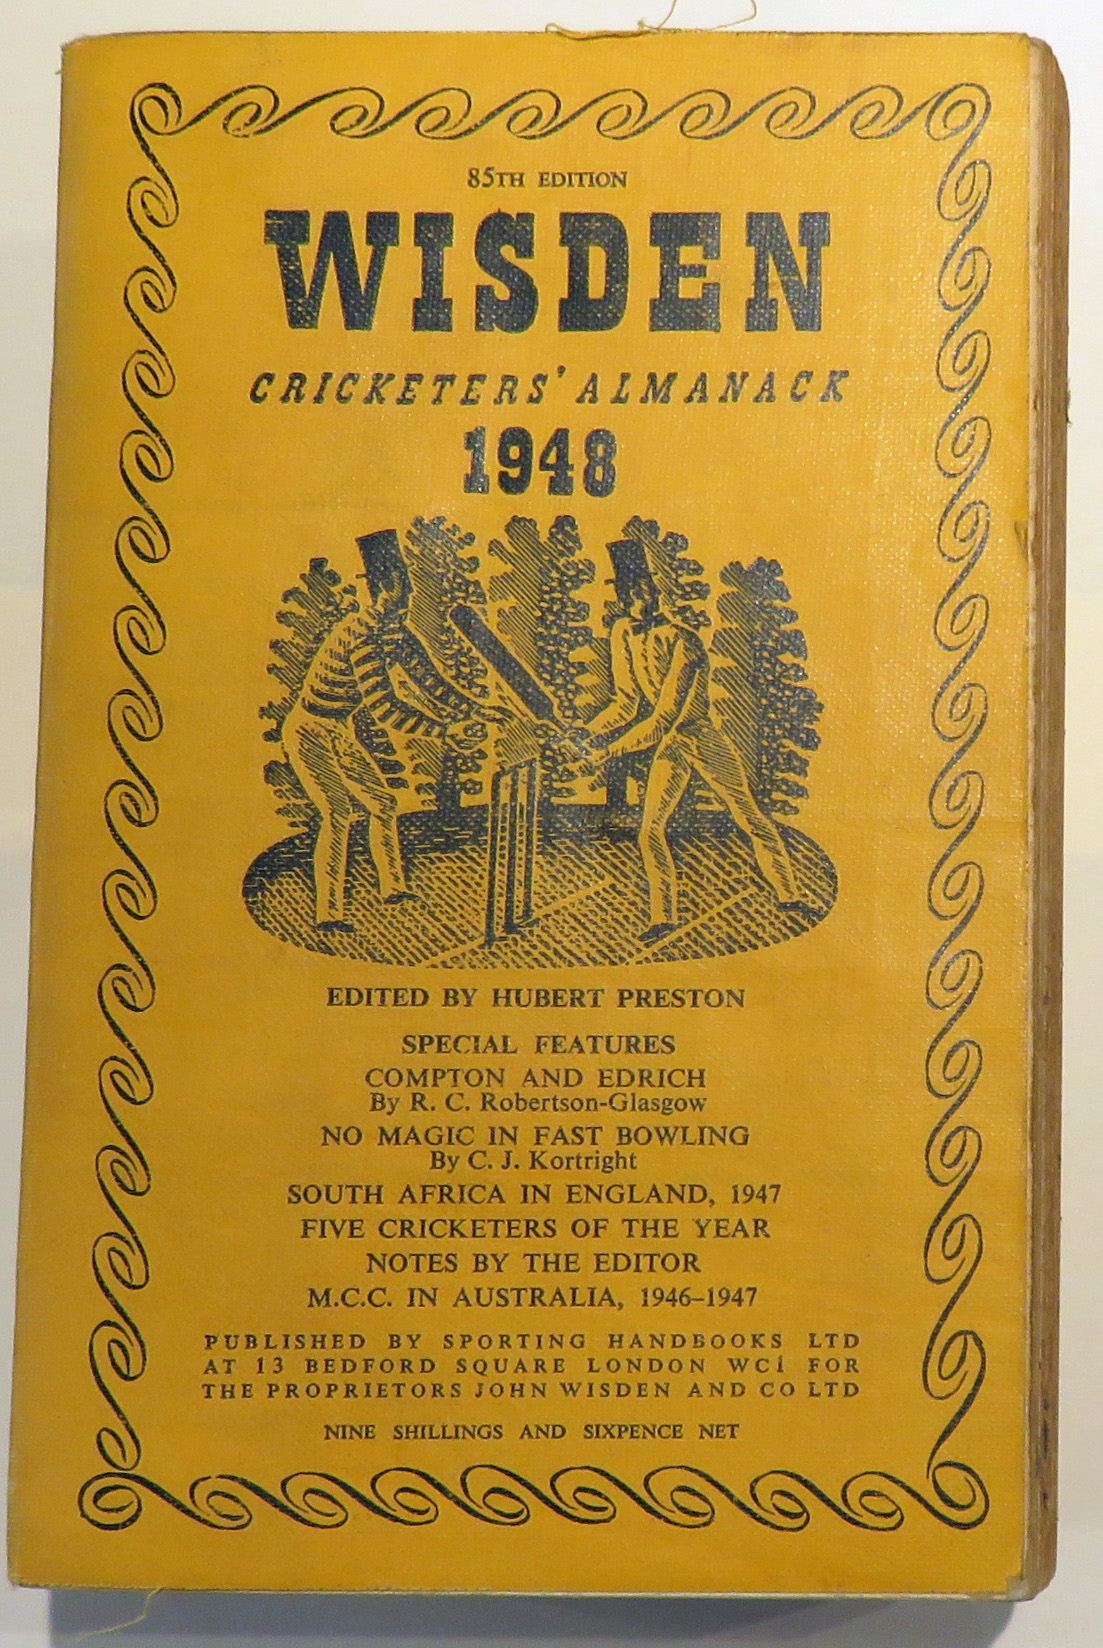 Wisden Cricketers' Almanack 1948